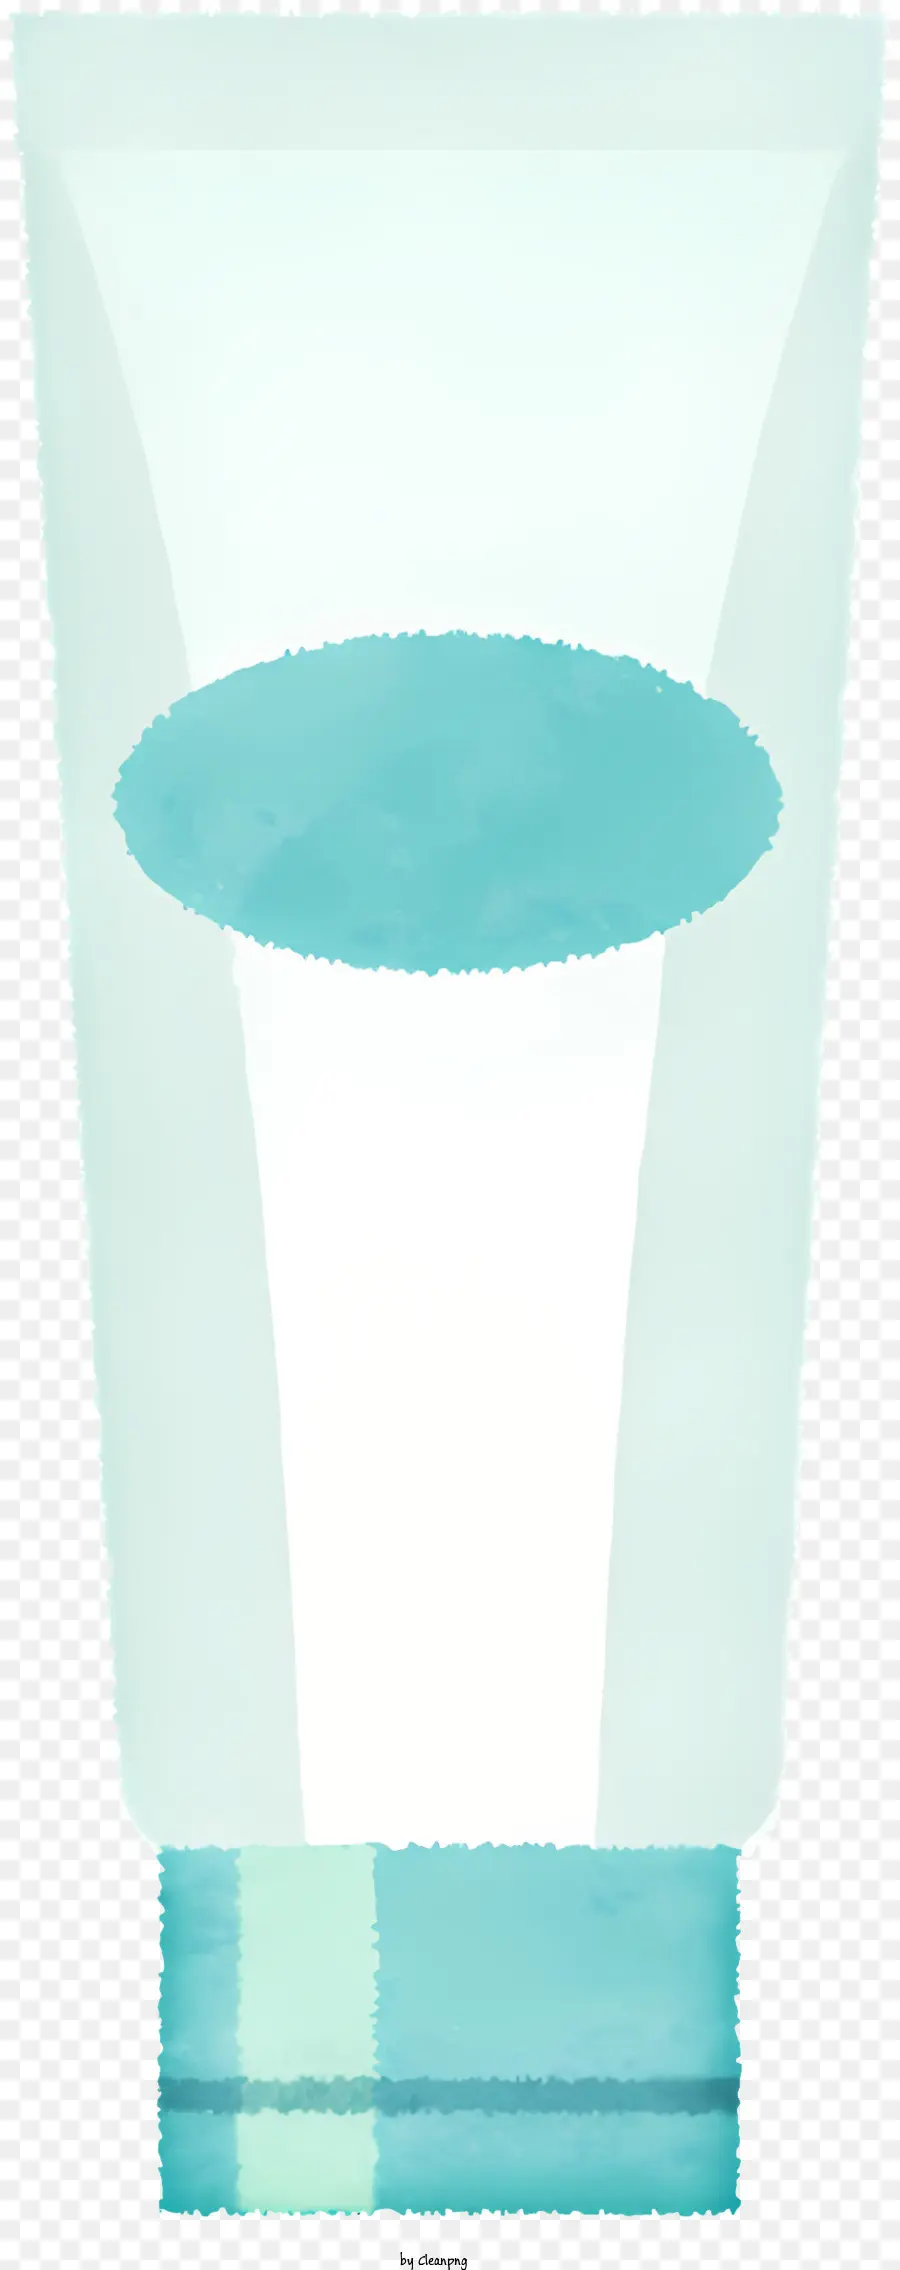 ICON -Kunststoffbehälter Durchscheinender Kunststoff Blauer Kunststoffstreifen transparente Kunststoffkappe - Kleiner, zylindrischer Behälter aus durchscheinendem Kunststoff